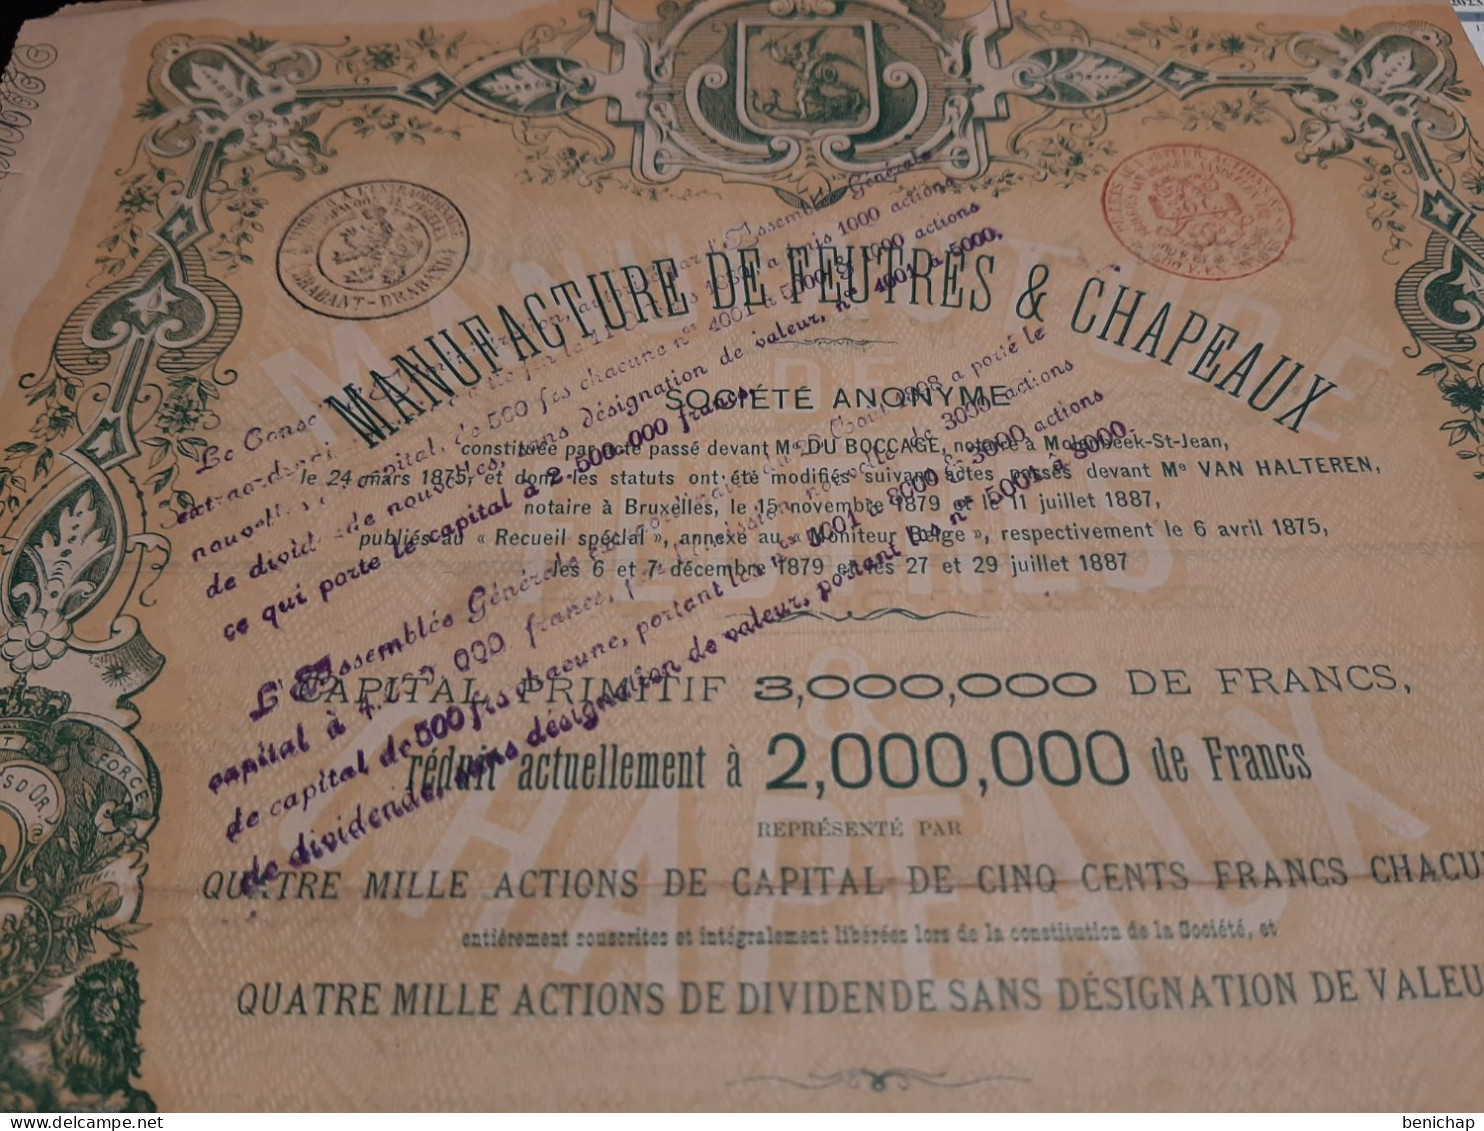 Manufacture De Feutre & Chapeaux - Action De Dividende Au Porteur - Bruxelles Août 1887. - Textiles